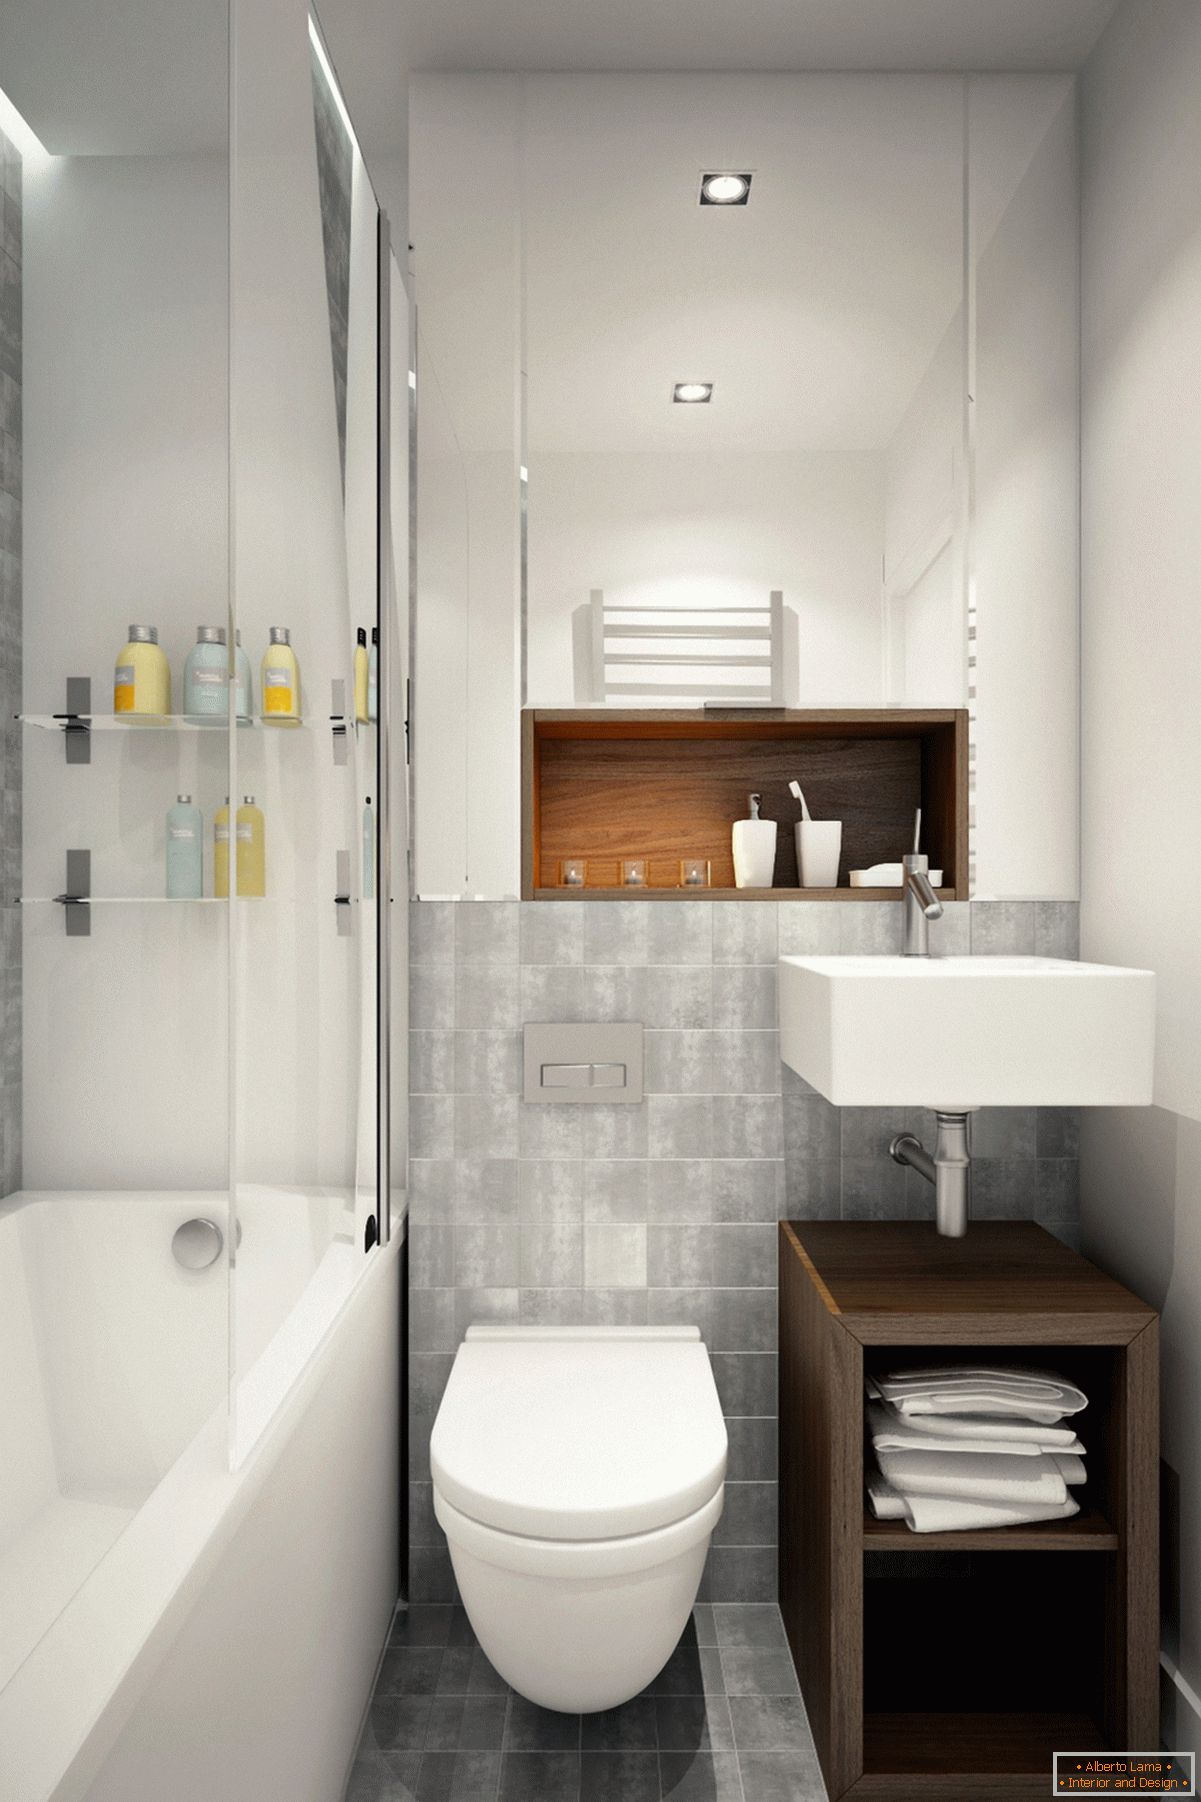 Дизајн купатила у белој боји